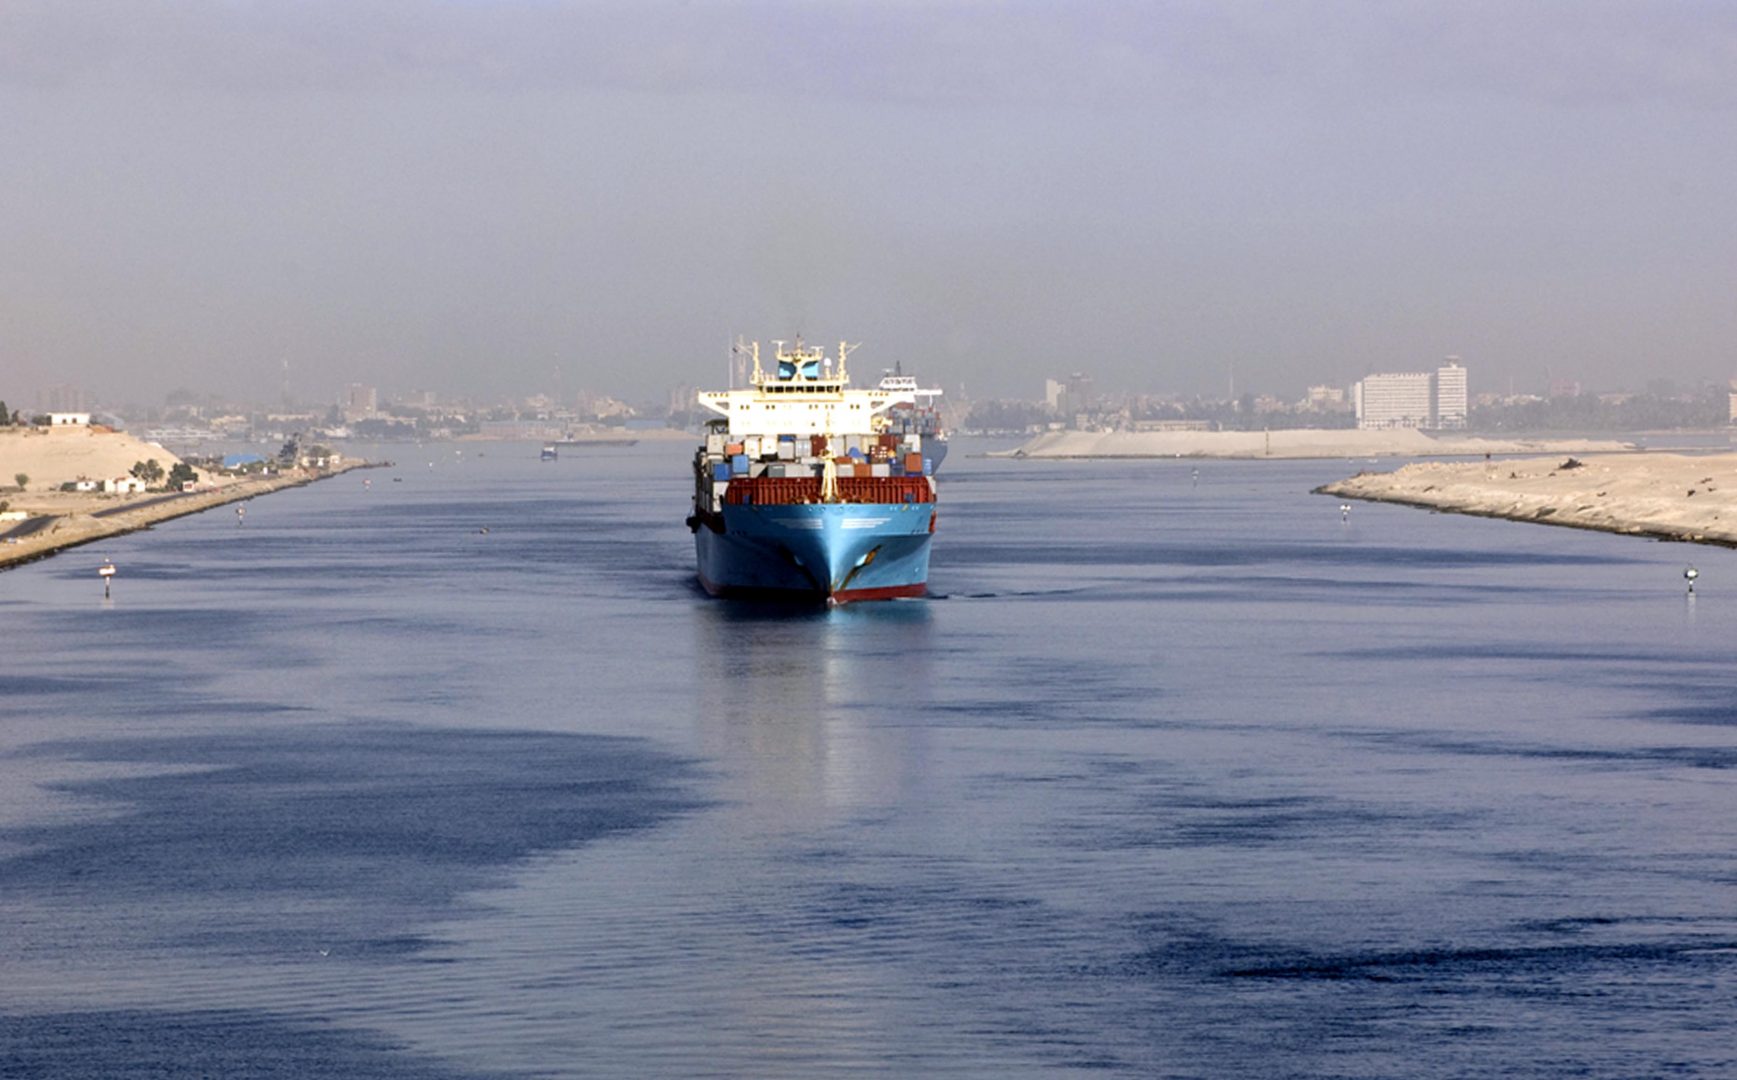 عوارض ترانزیت کشتی در کانال سوئز بدون تغییر باقی ماند